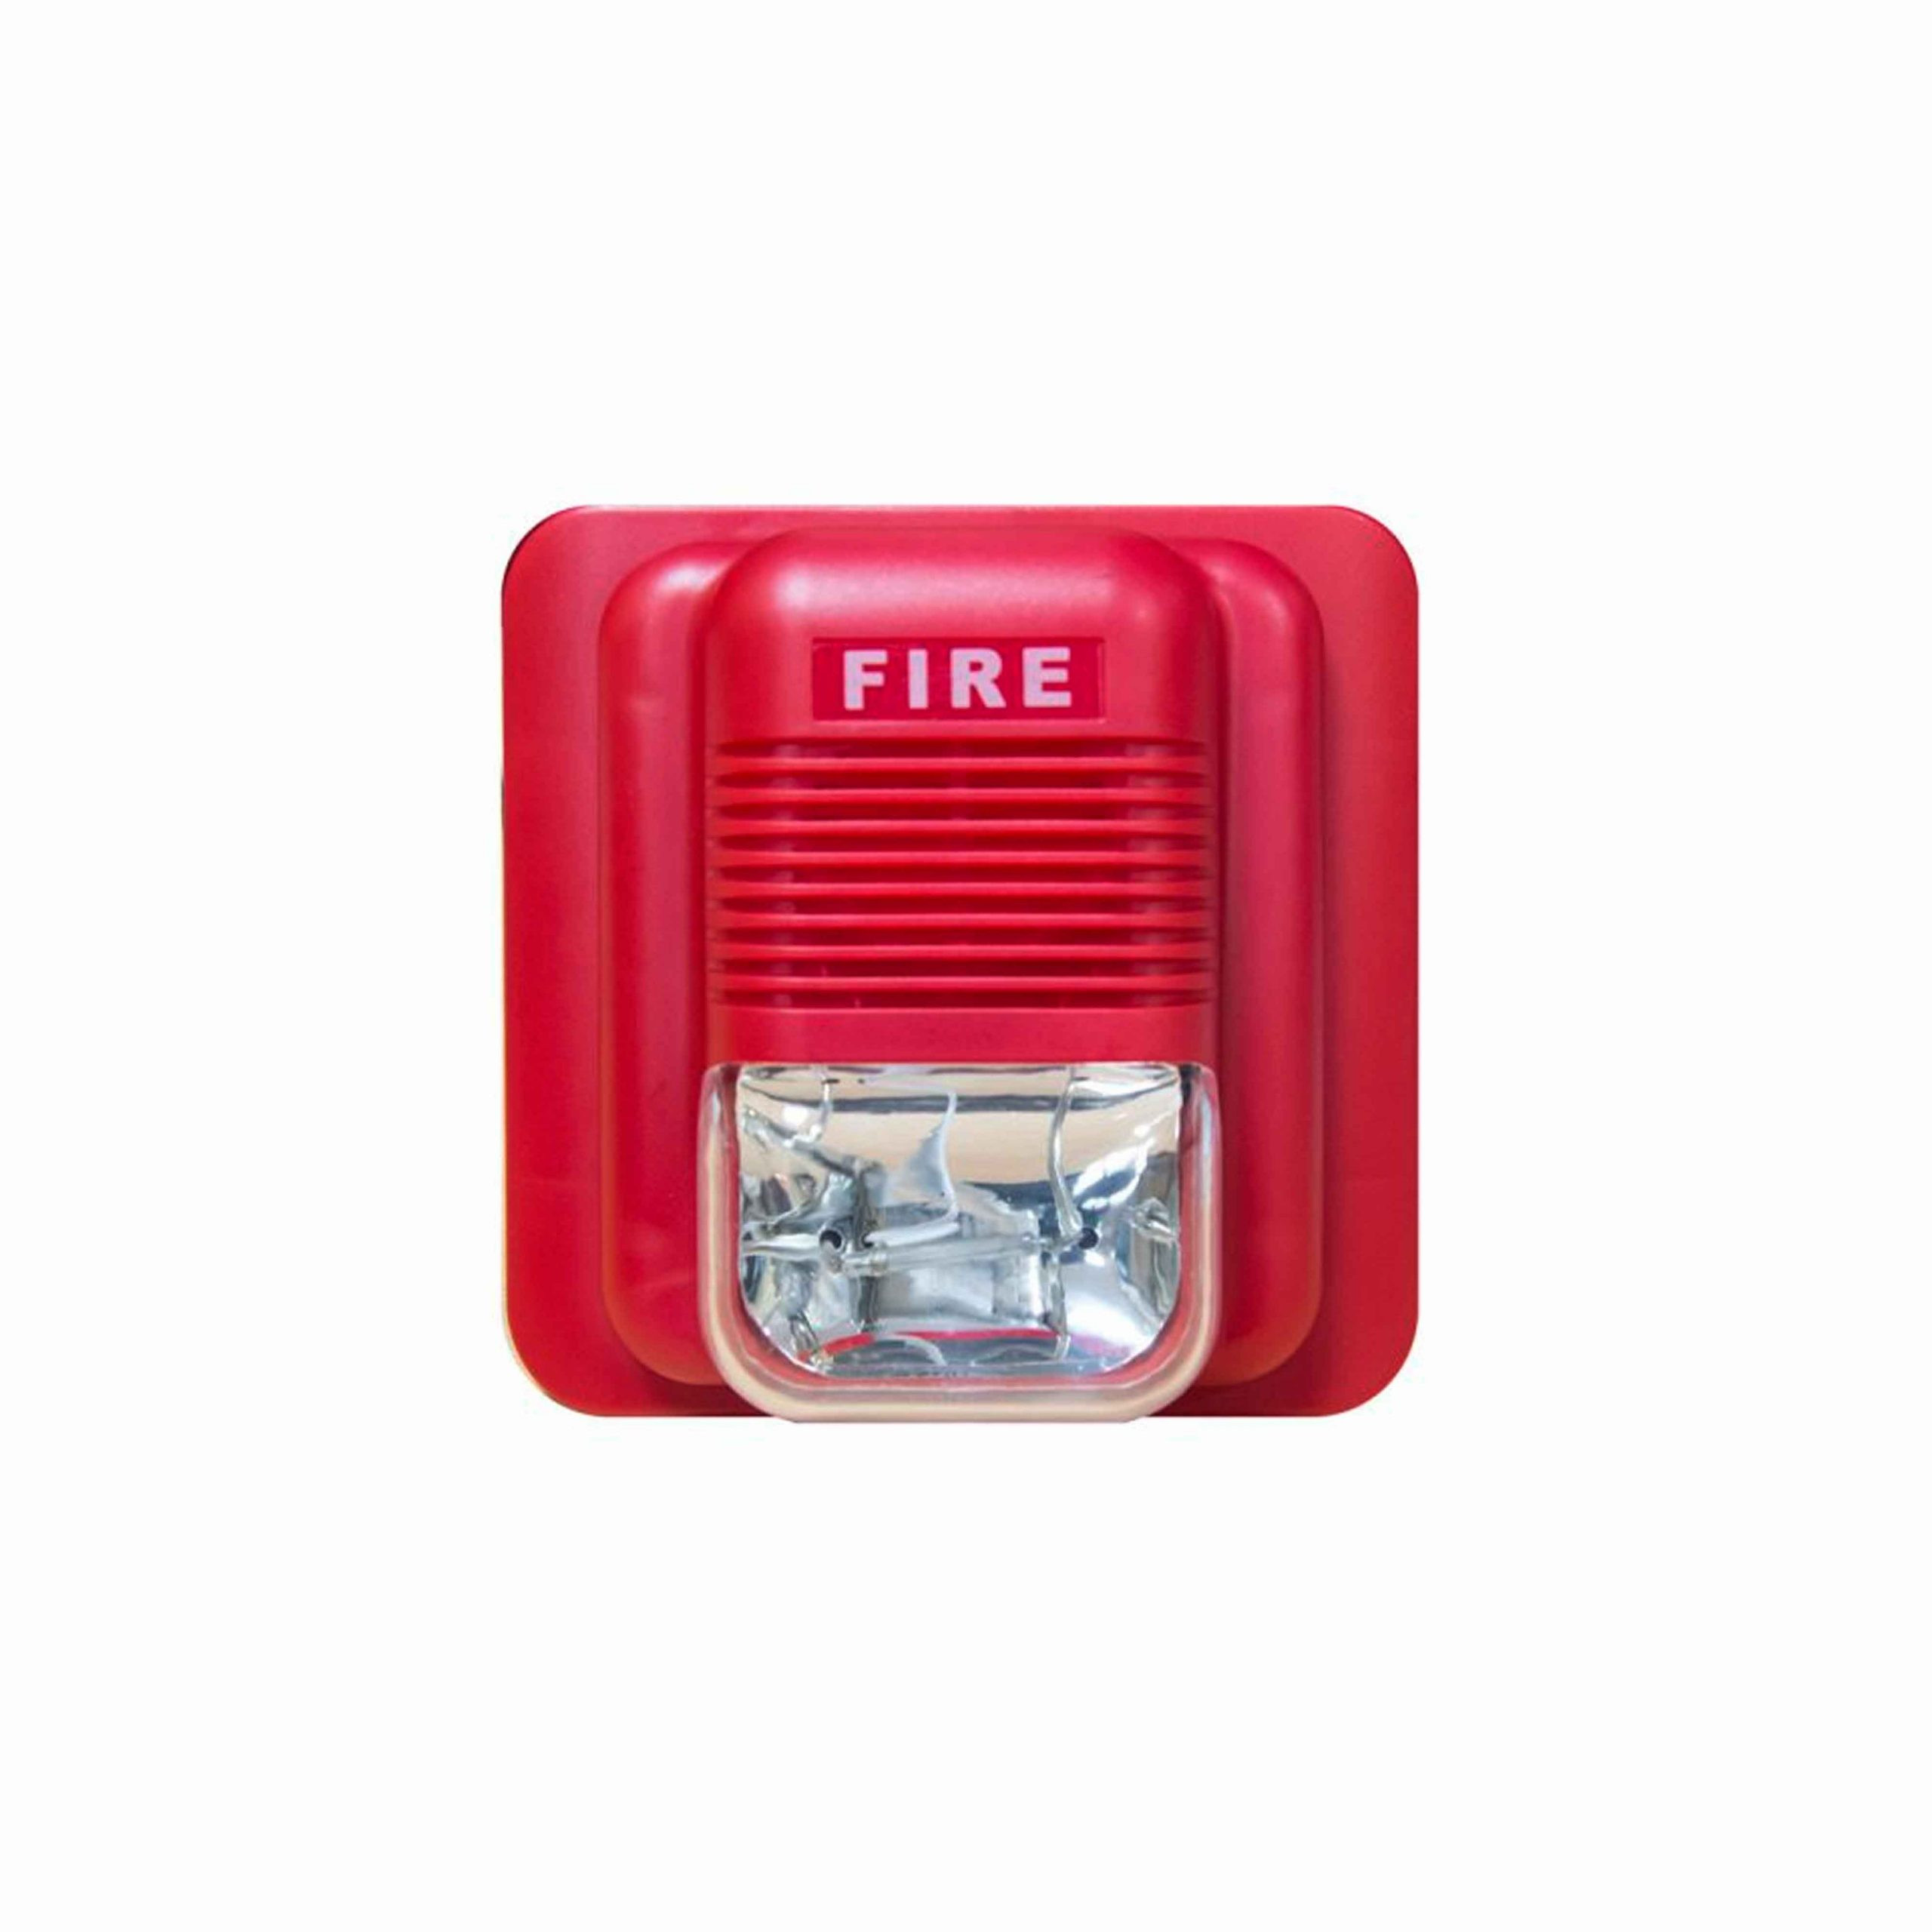 Sirena con Estrobo color rojo para sistema de incendio. EPA-183B